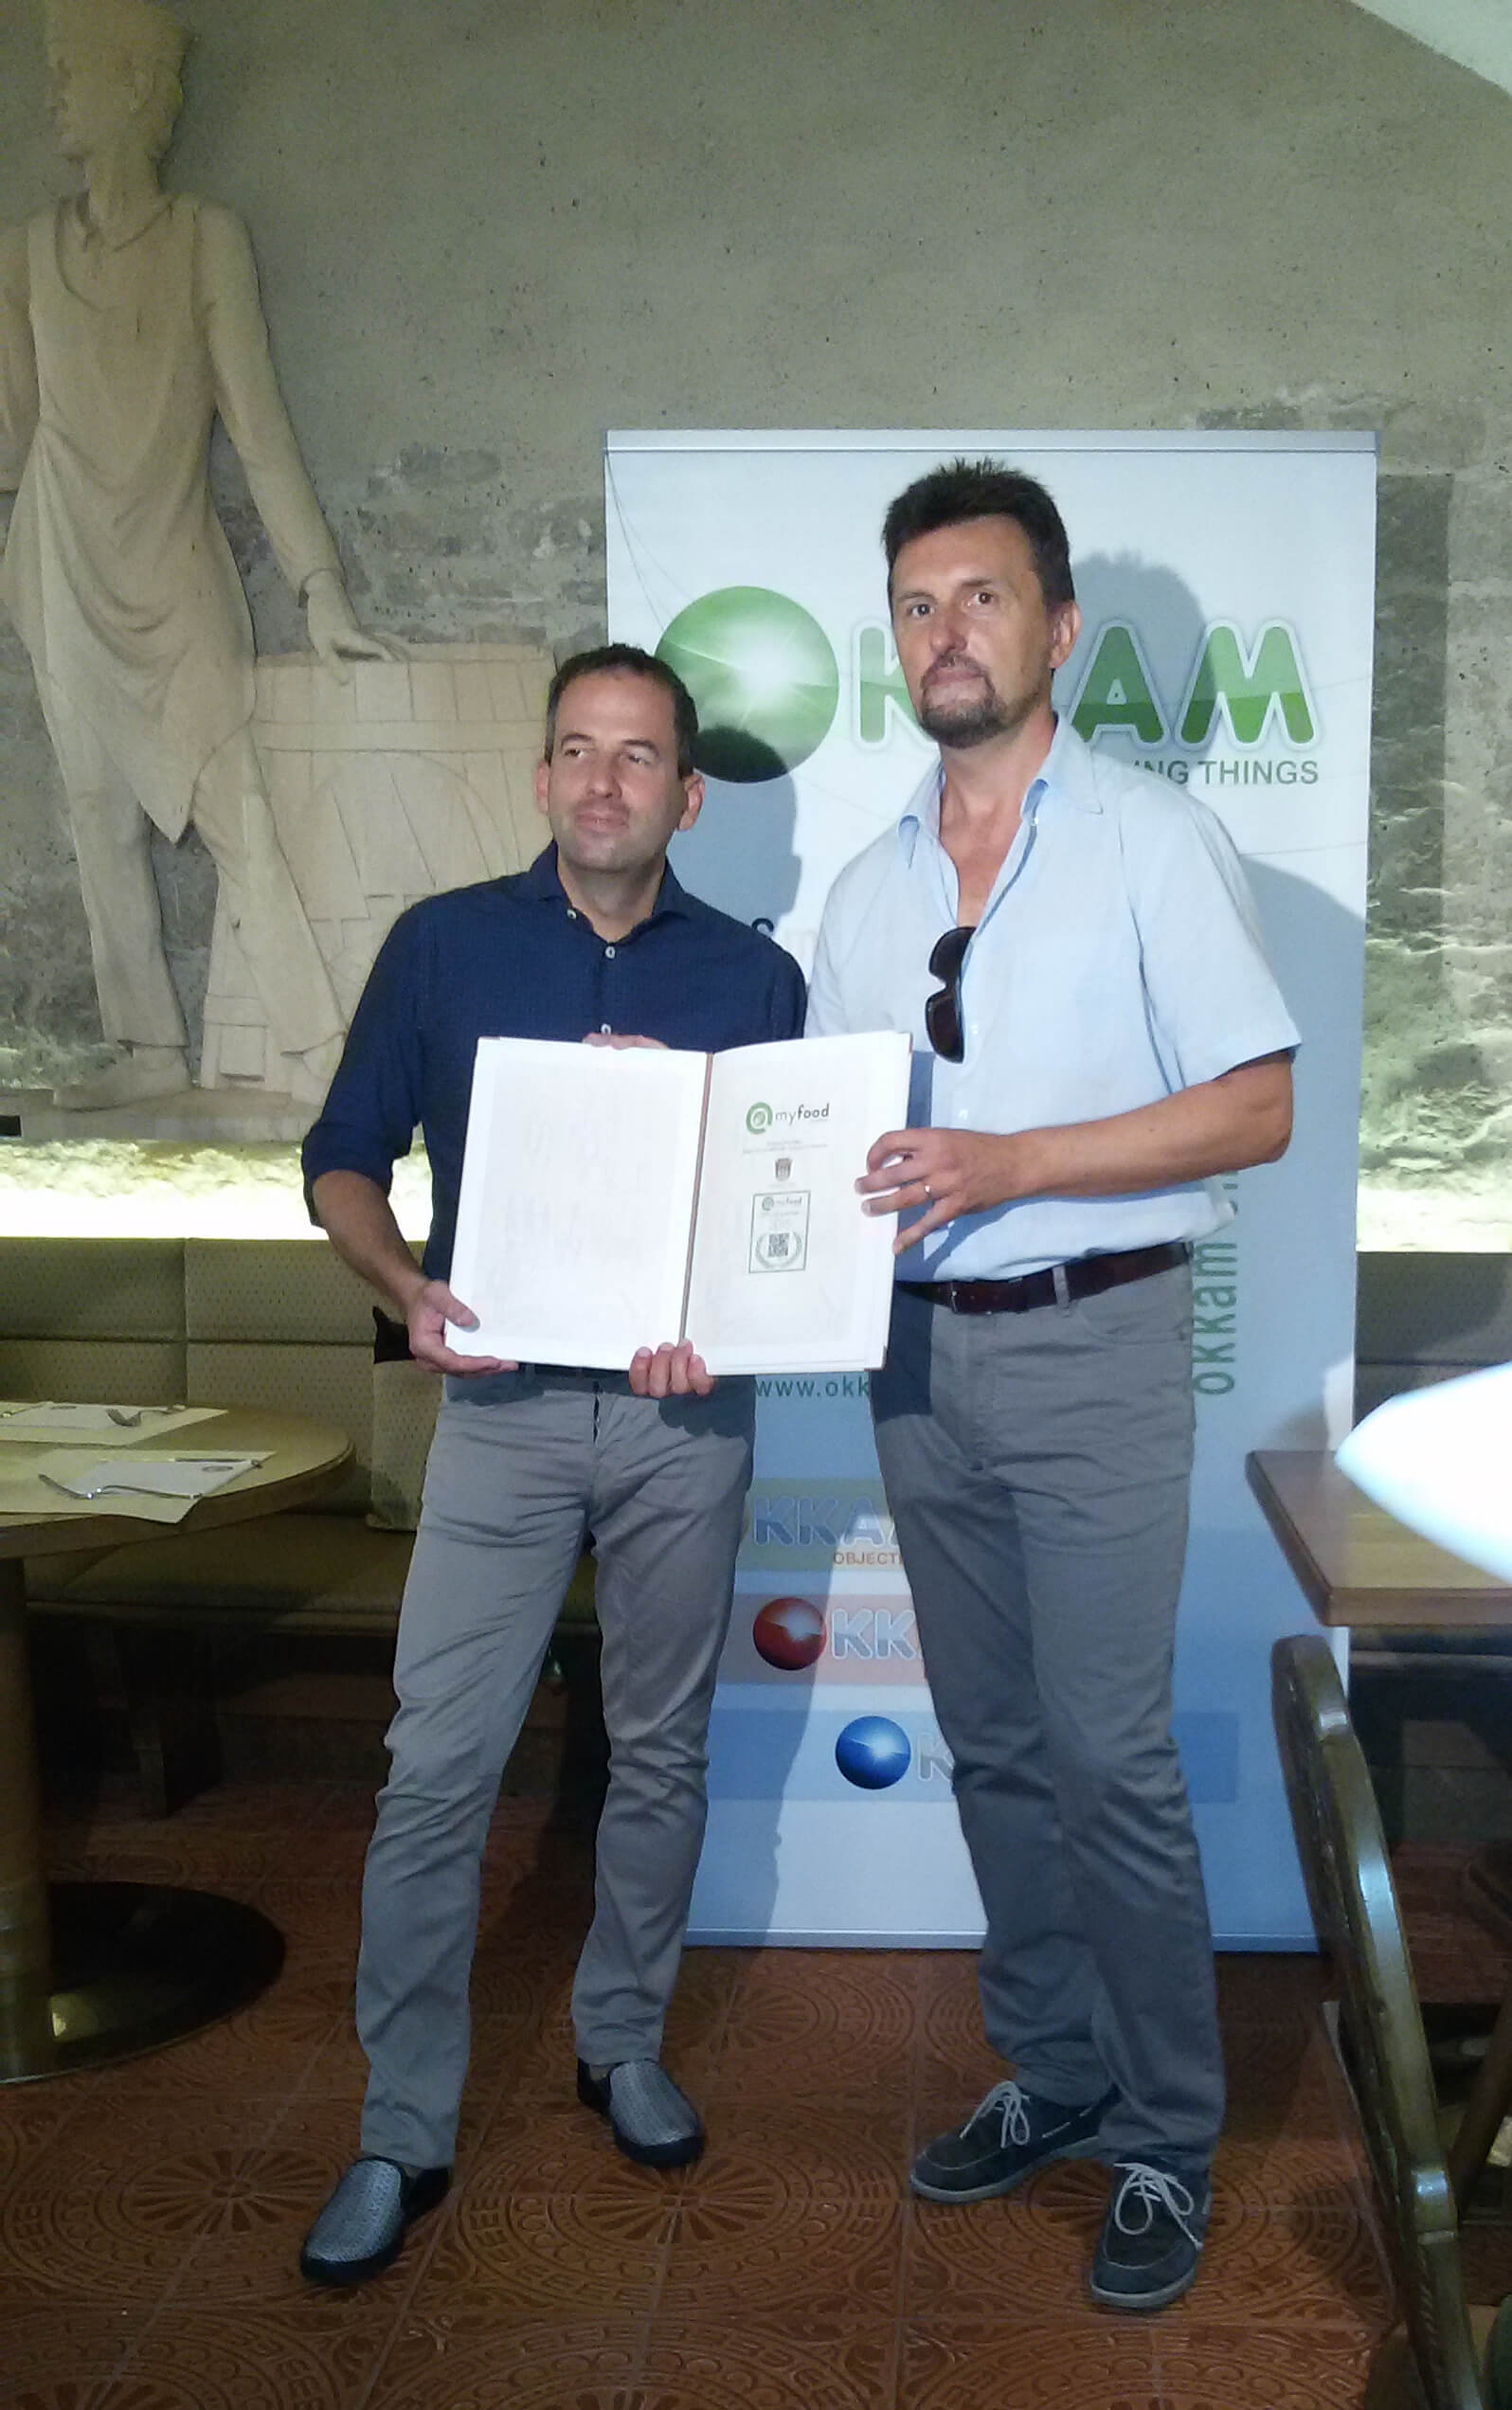 Nicola Malossini di Forst e Paolo Bouquet di OKKAM presentano il menù digitale accessibile tramite QR code myfood